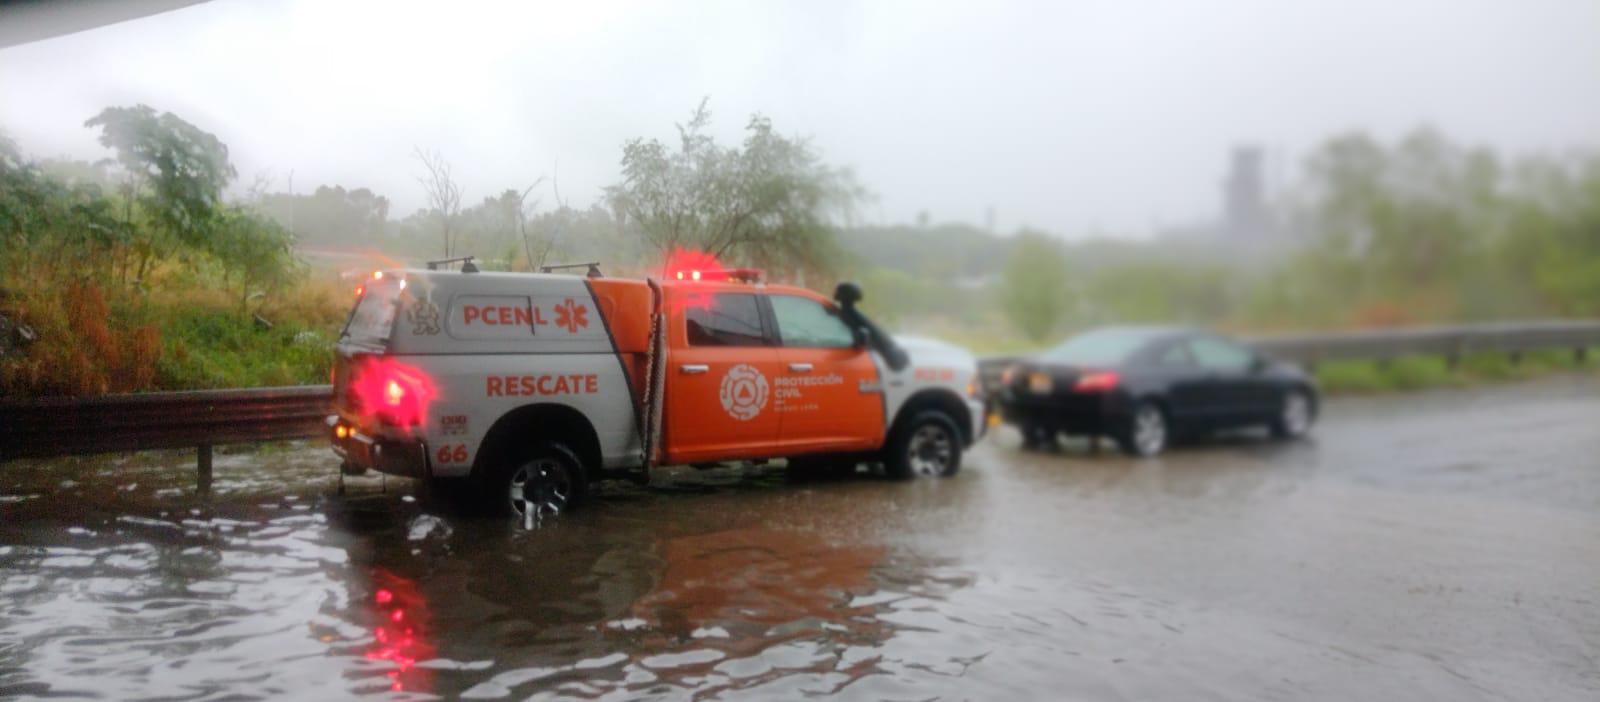 Lluvias en Nuevo León causan caos vial y encharcamientos, así como accidentes de tráfico. Noticias en tiempo real